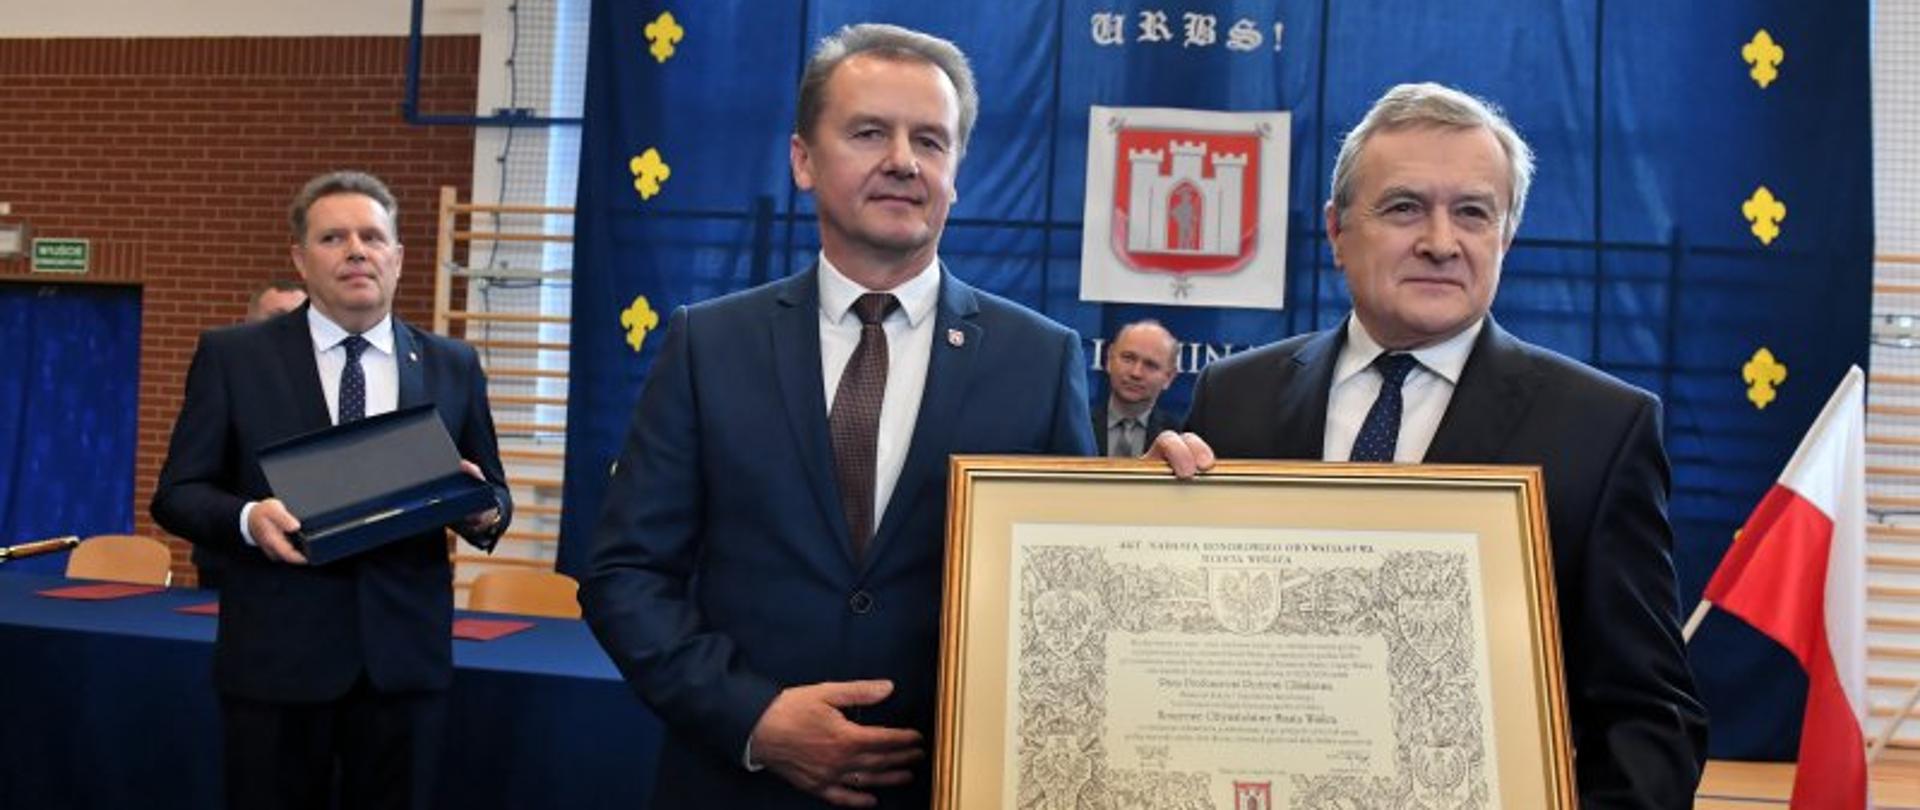 Wicepremier, minister kultury prof. Piotr Gliński pierwszym honorowym obywatelem Wiślicy, fot. Piotr Polak/PAP